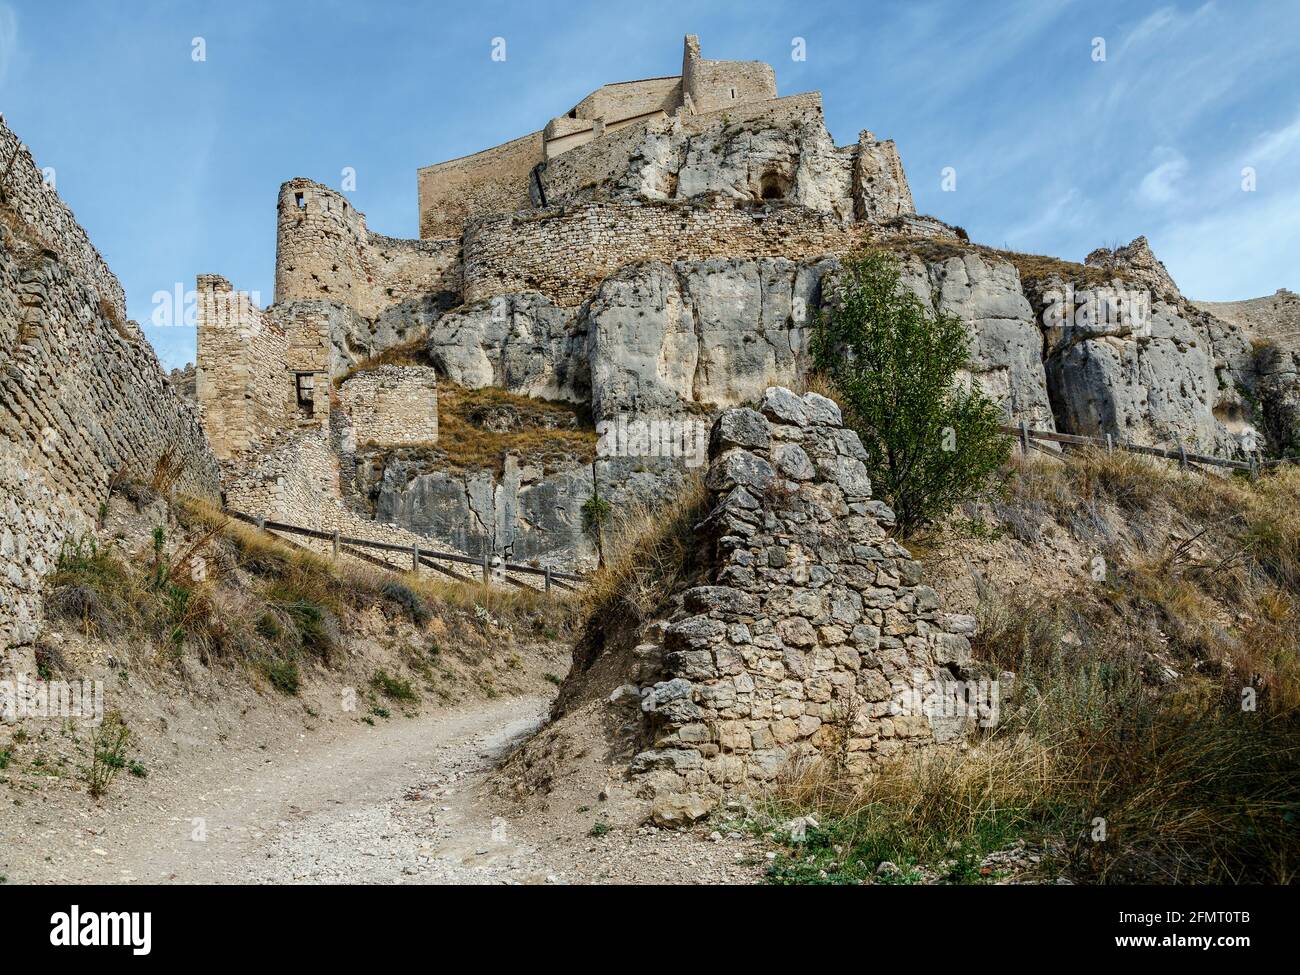 Castle of Morella, the province of Castellon, Spain., Maestrazgo in Valencia, Spain Stock Photo